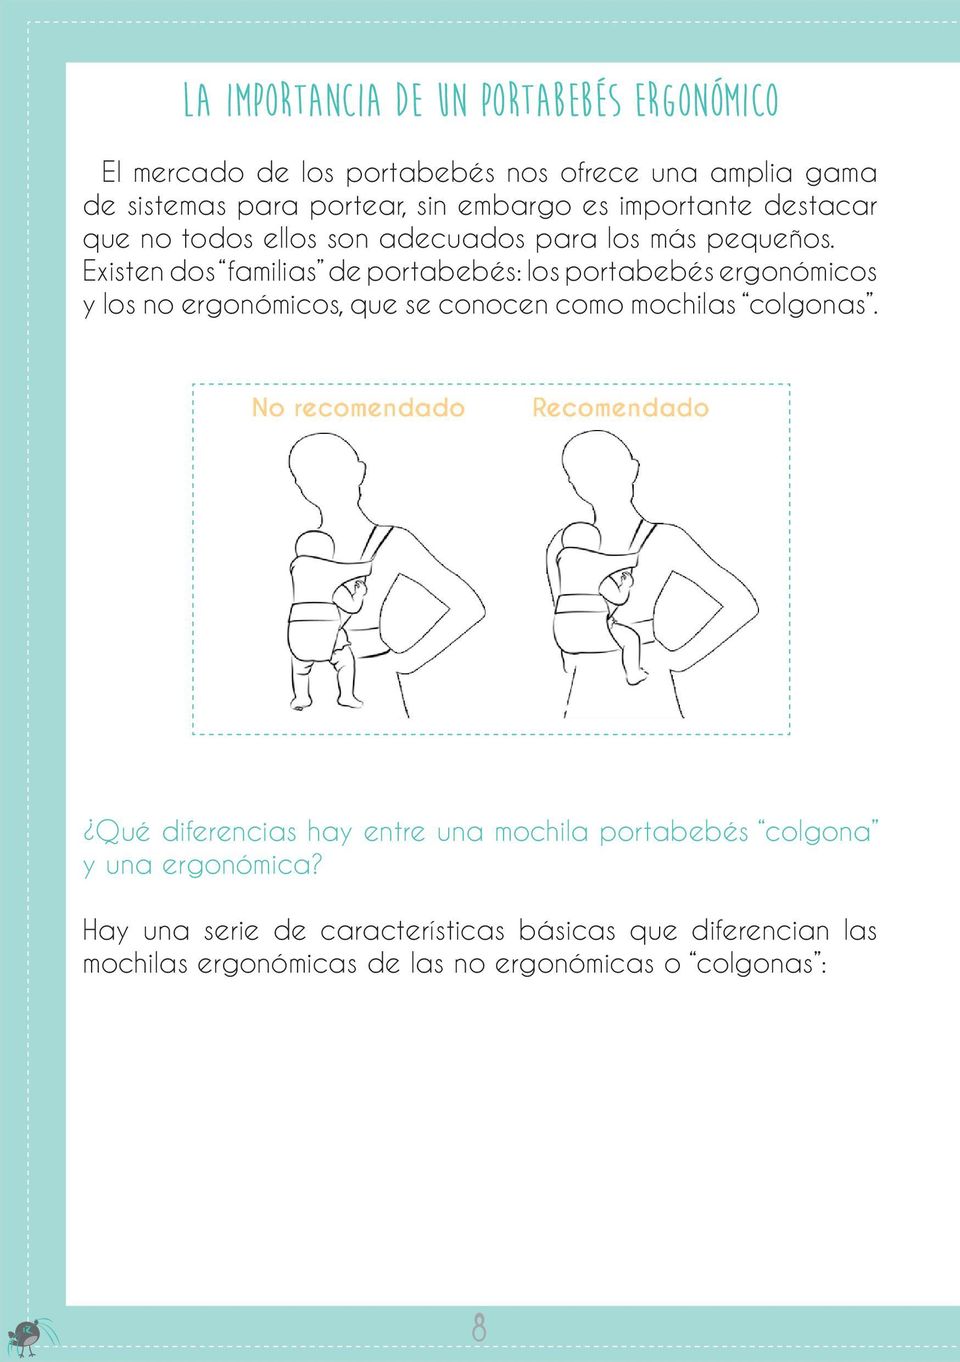 Existen dos familias de portabebés: los portabebés ergonómicos y los no ergonómicos, que se conocen como mochilas colgonas.